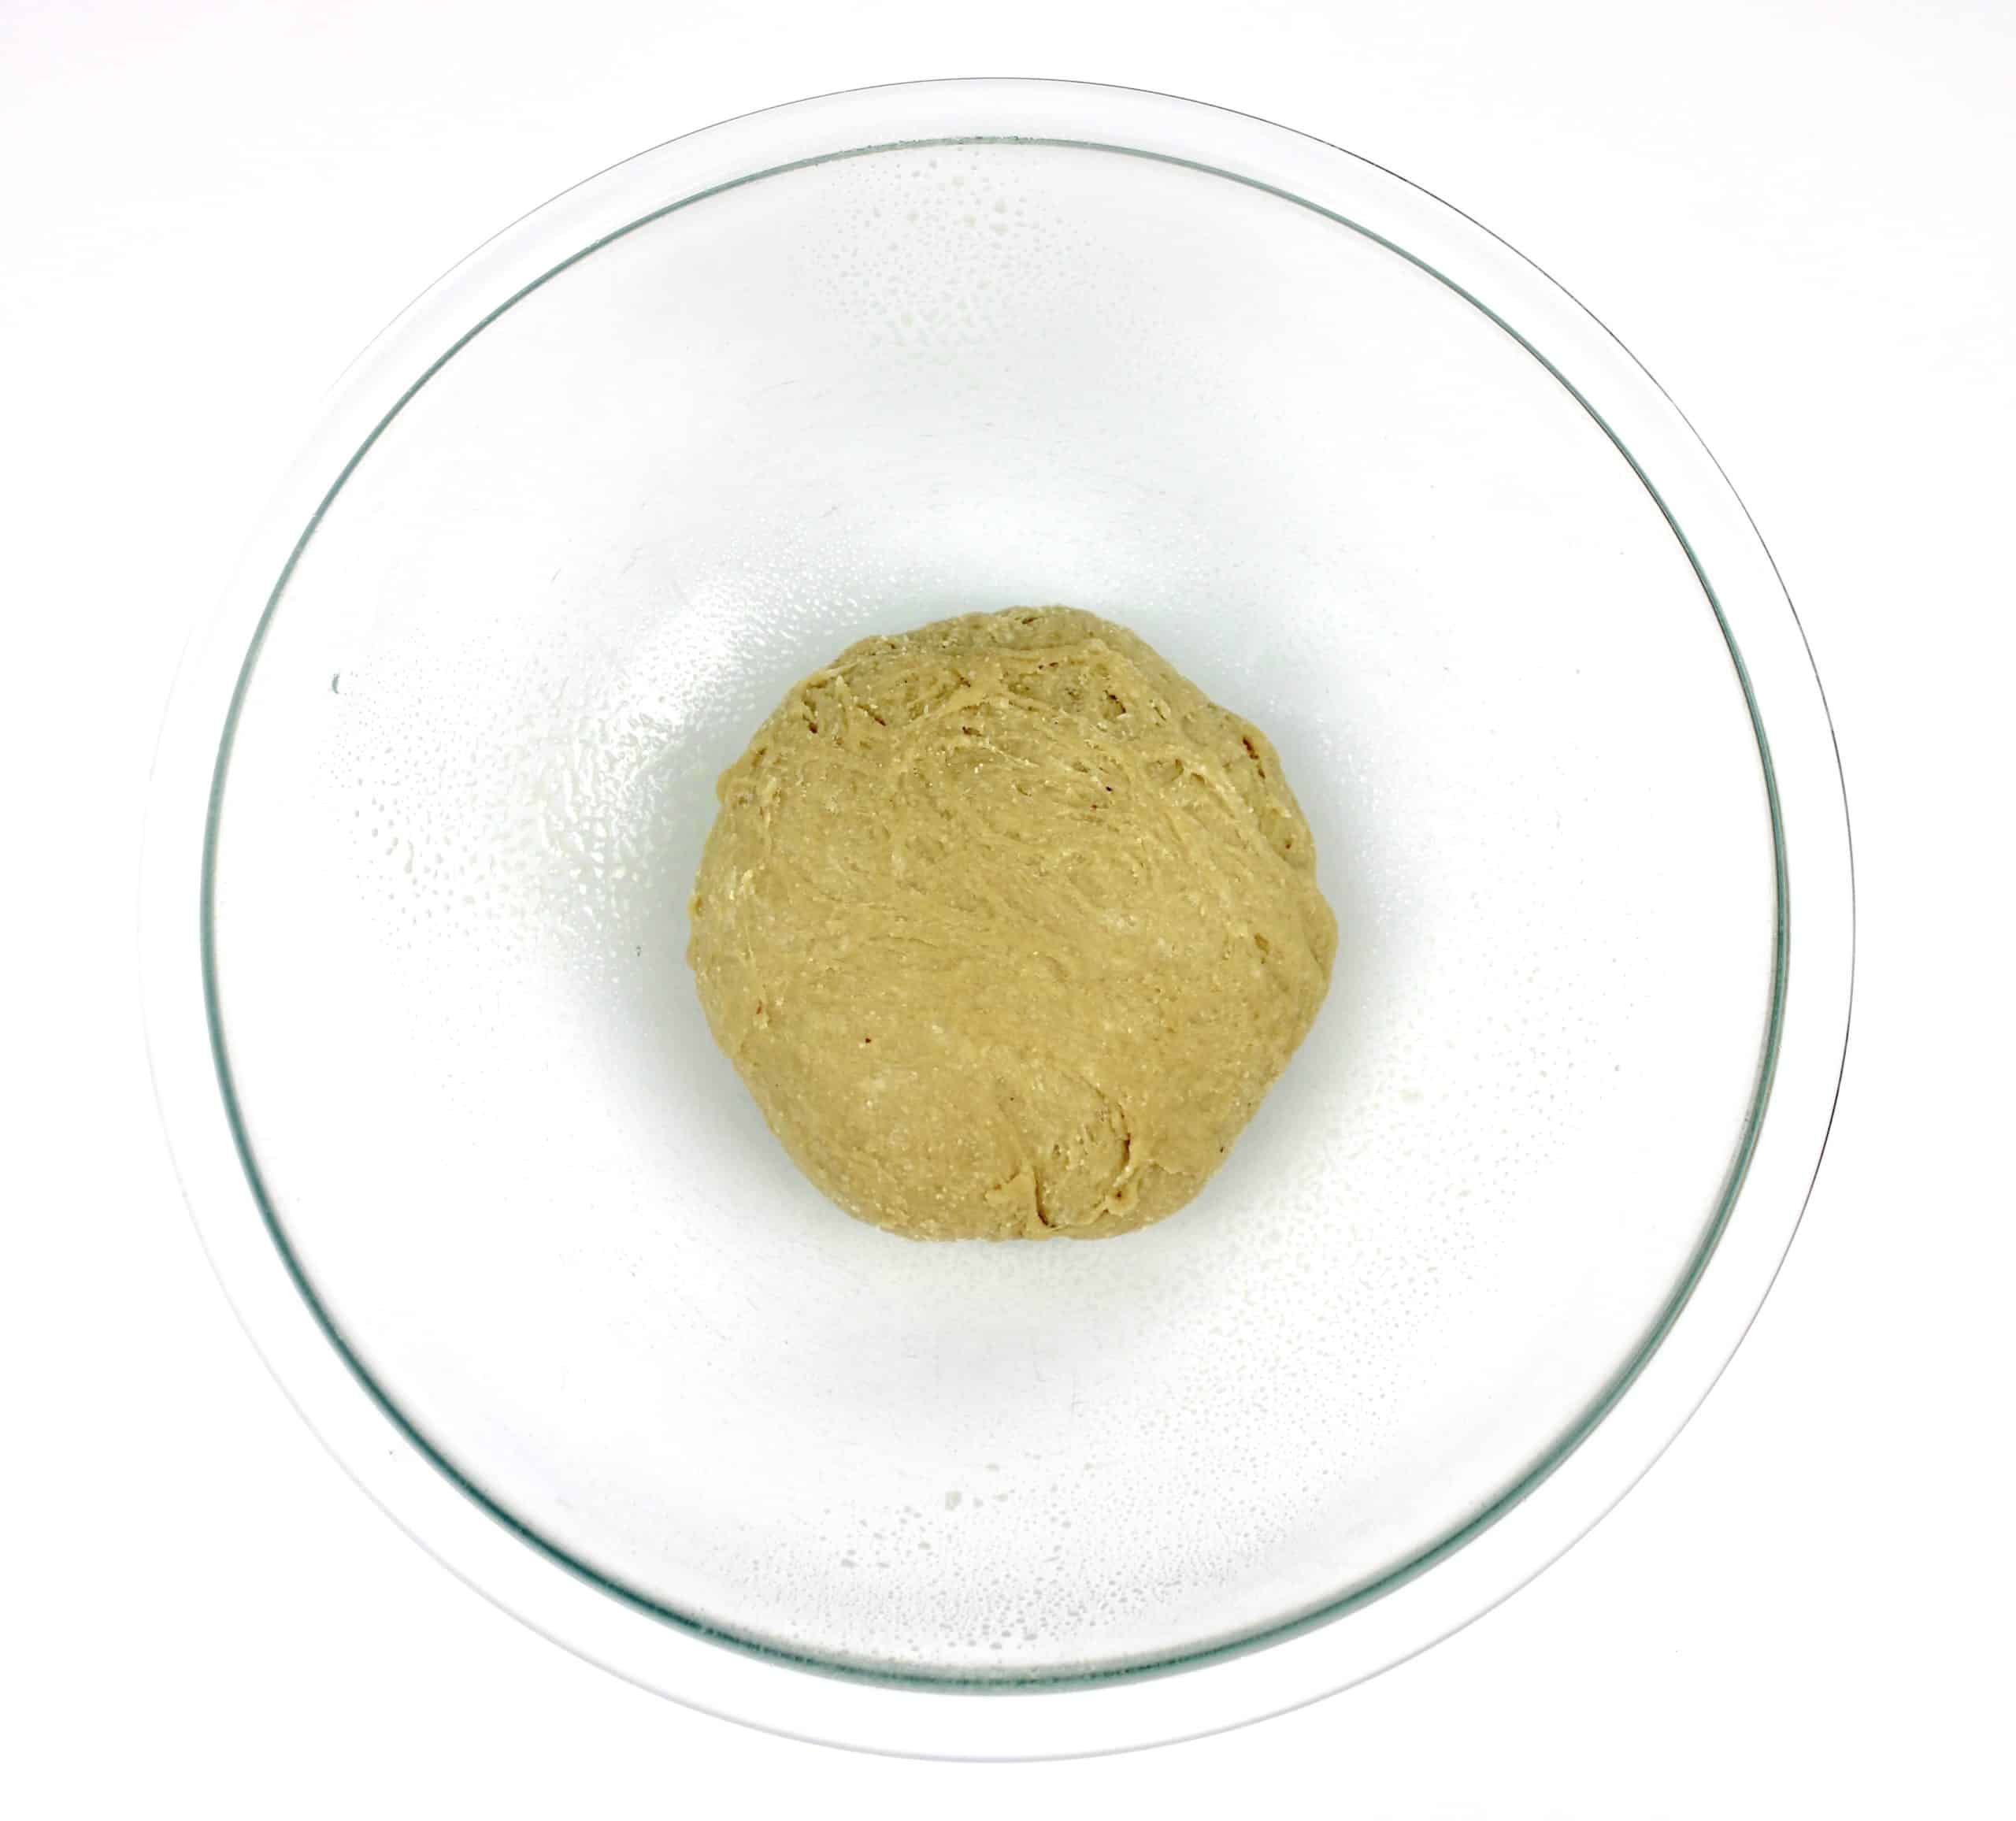 keto tortilla dough ball in glass bowl